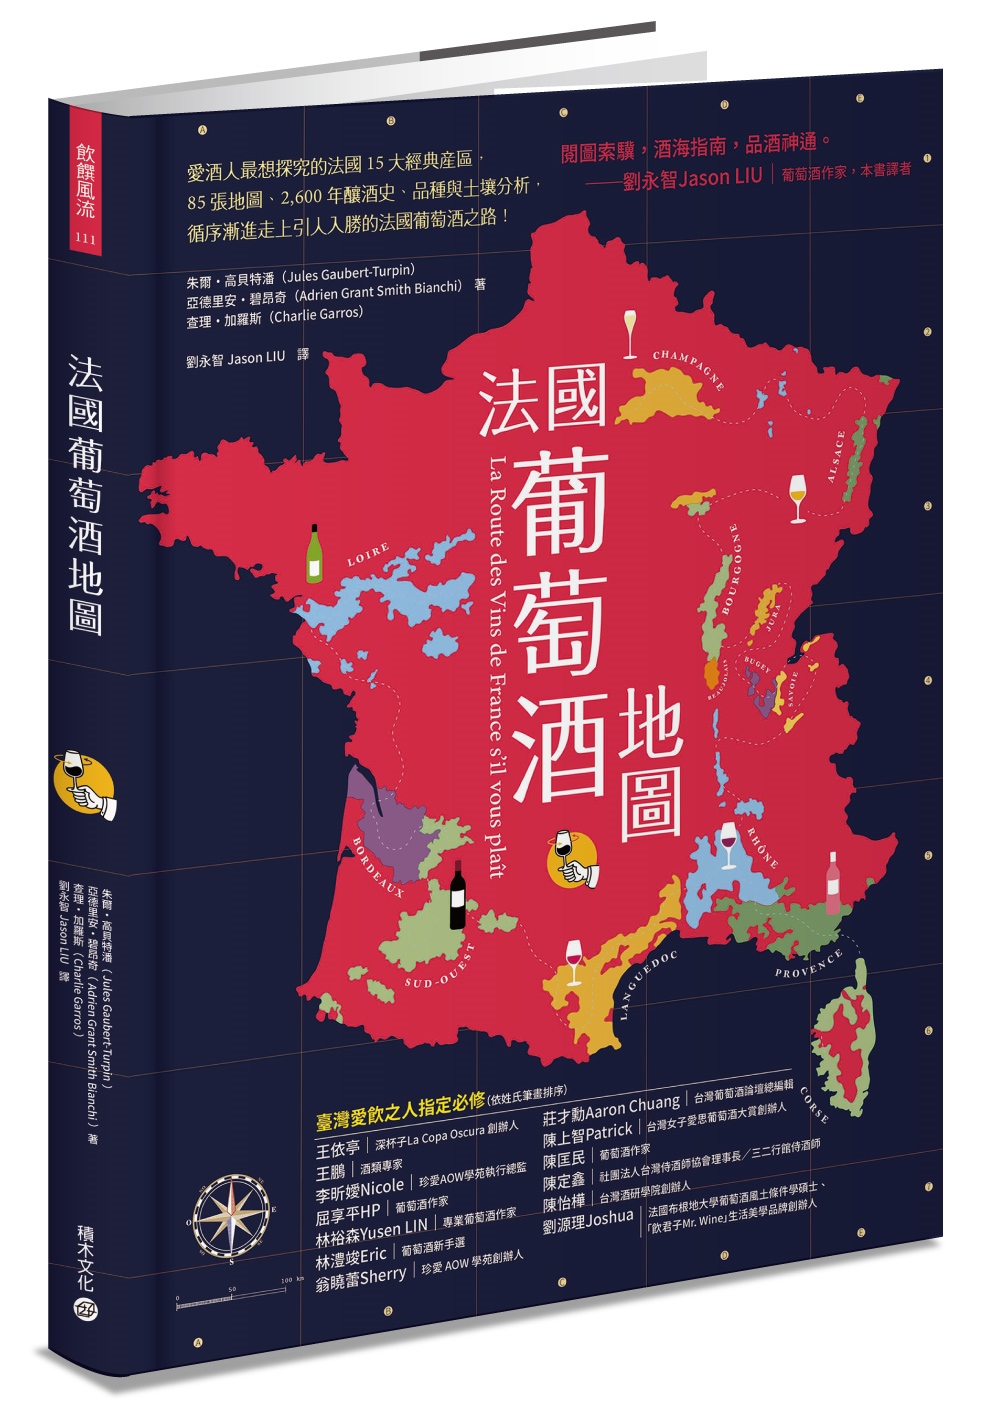 法國葡萄酒地圖：愛酒人最想探究的法國15大經典產區，85張地圖、2,600年的釀酒史、品種與土壤分析，循序漸進走上引人入勝的法國葡萄酒之路！